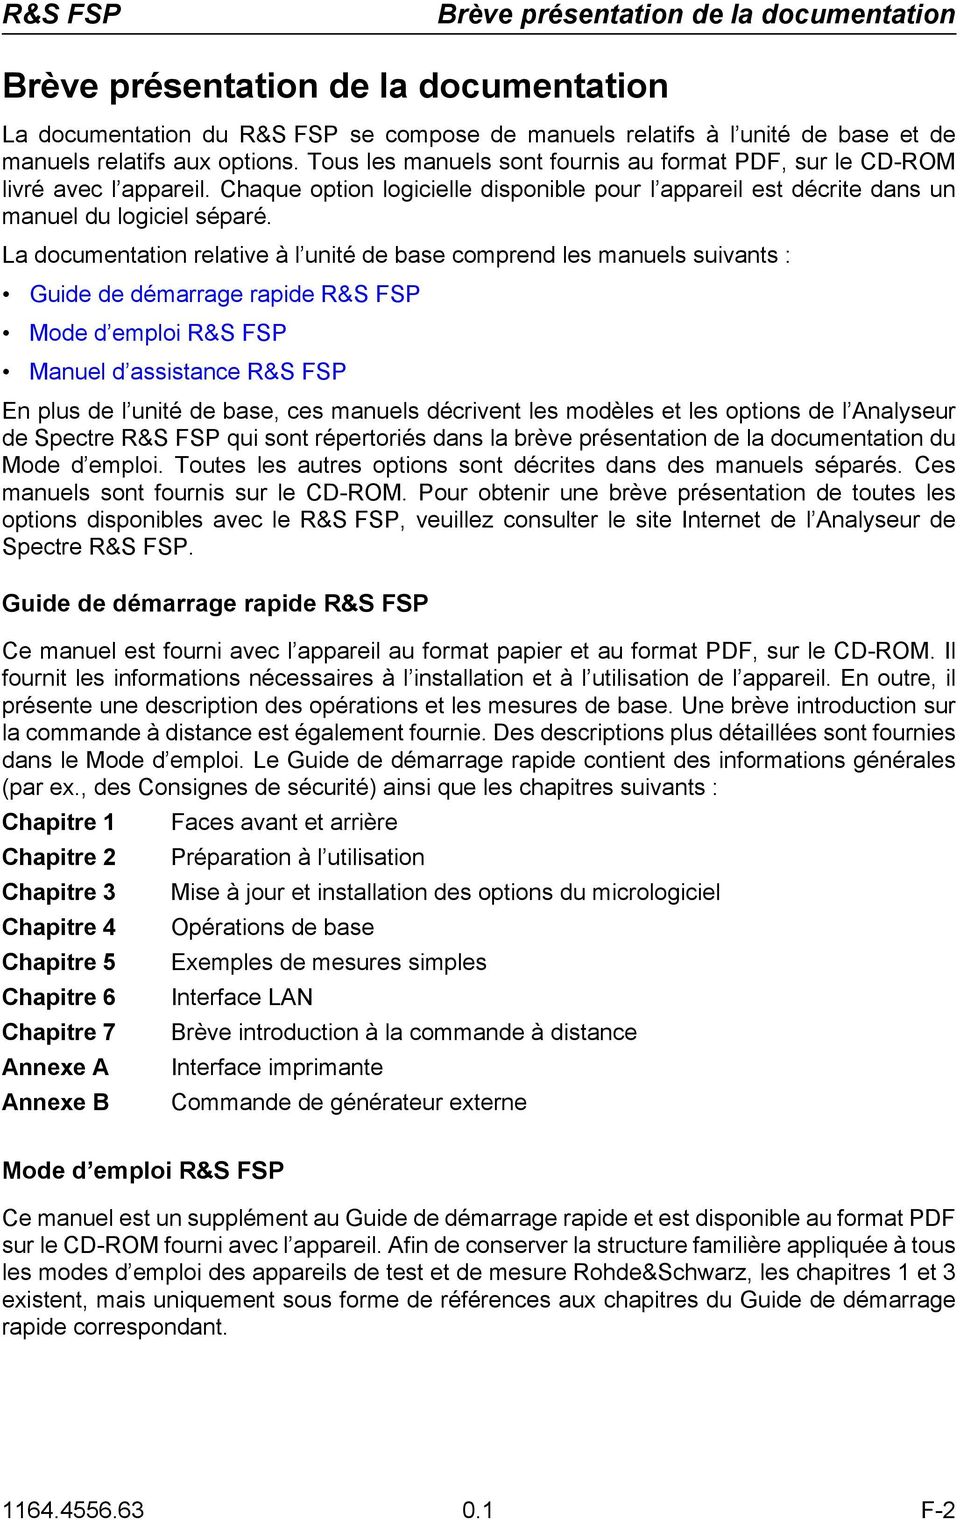 La documentation relative à l unité de base comprend les manuels suivants : Guide de démarrage rapide R&S FSP Mode d emploi R&S FSP Manuel d assistance R&S FSP En plus de l unité de base, ces manuels